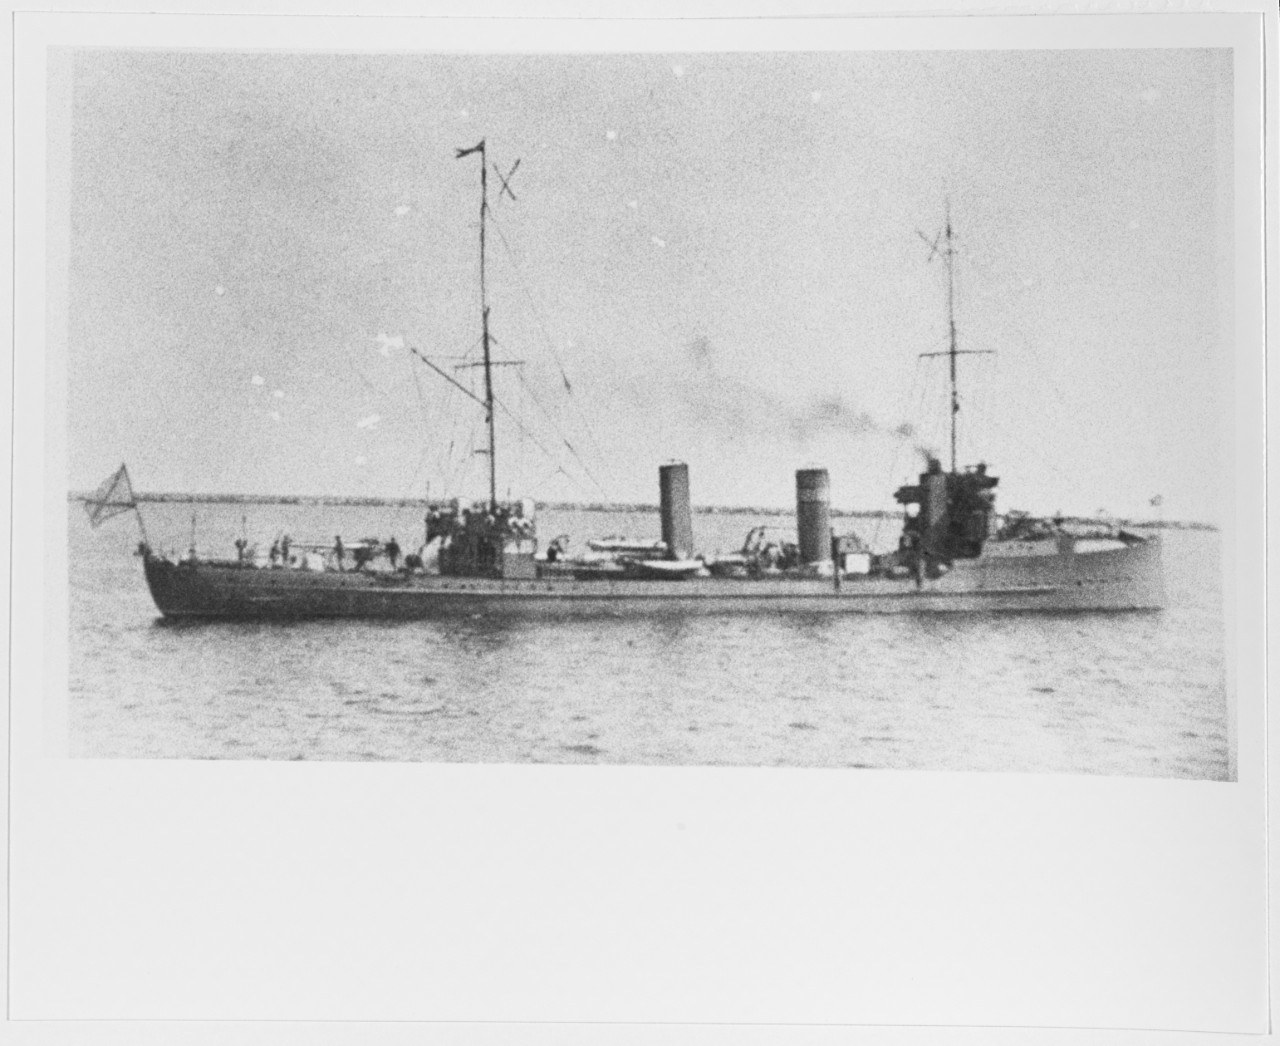 TURKMENETZ-STAVROPOLSKI (Russian Destroyer, 1904)